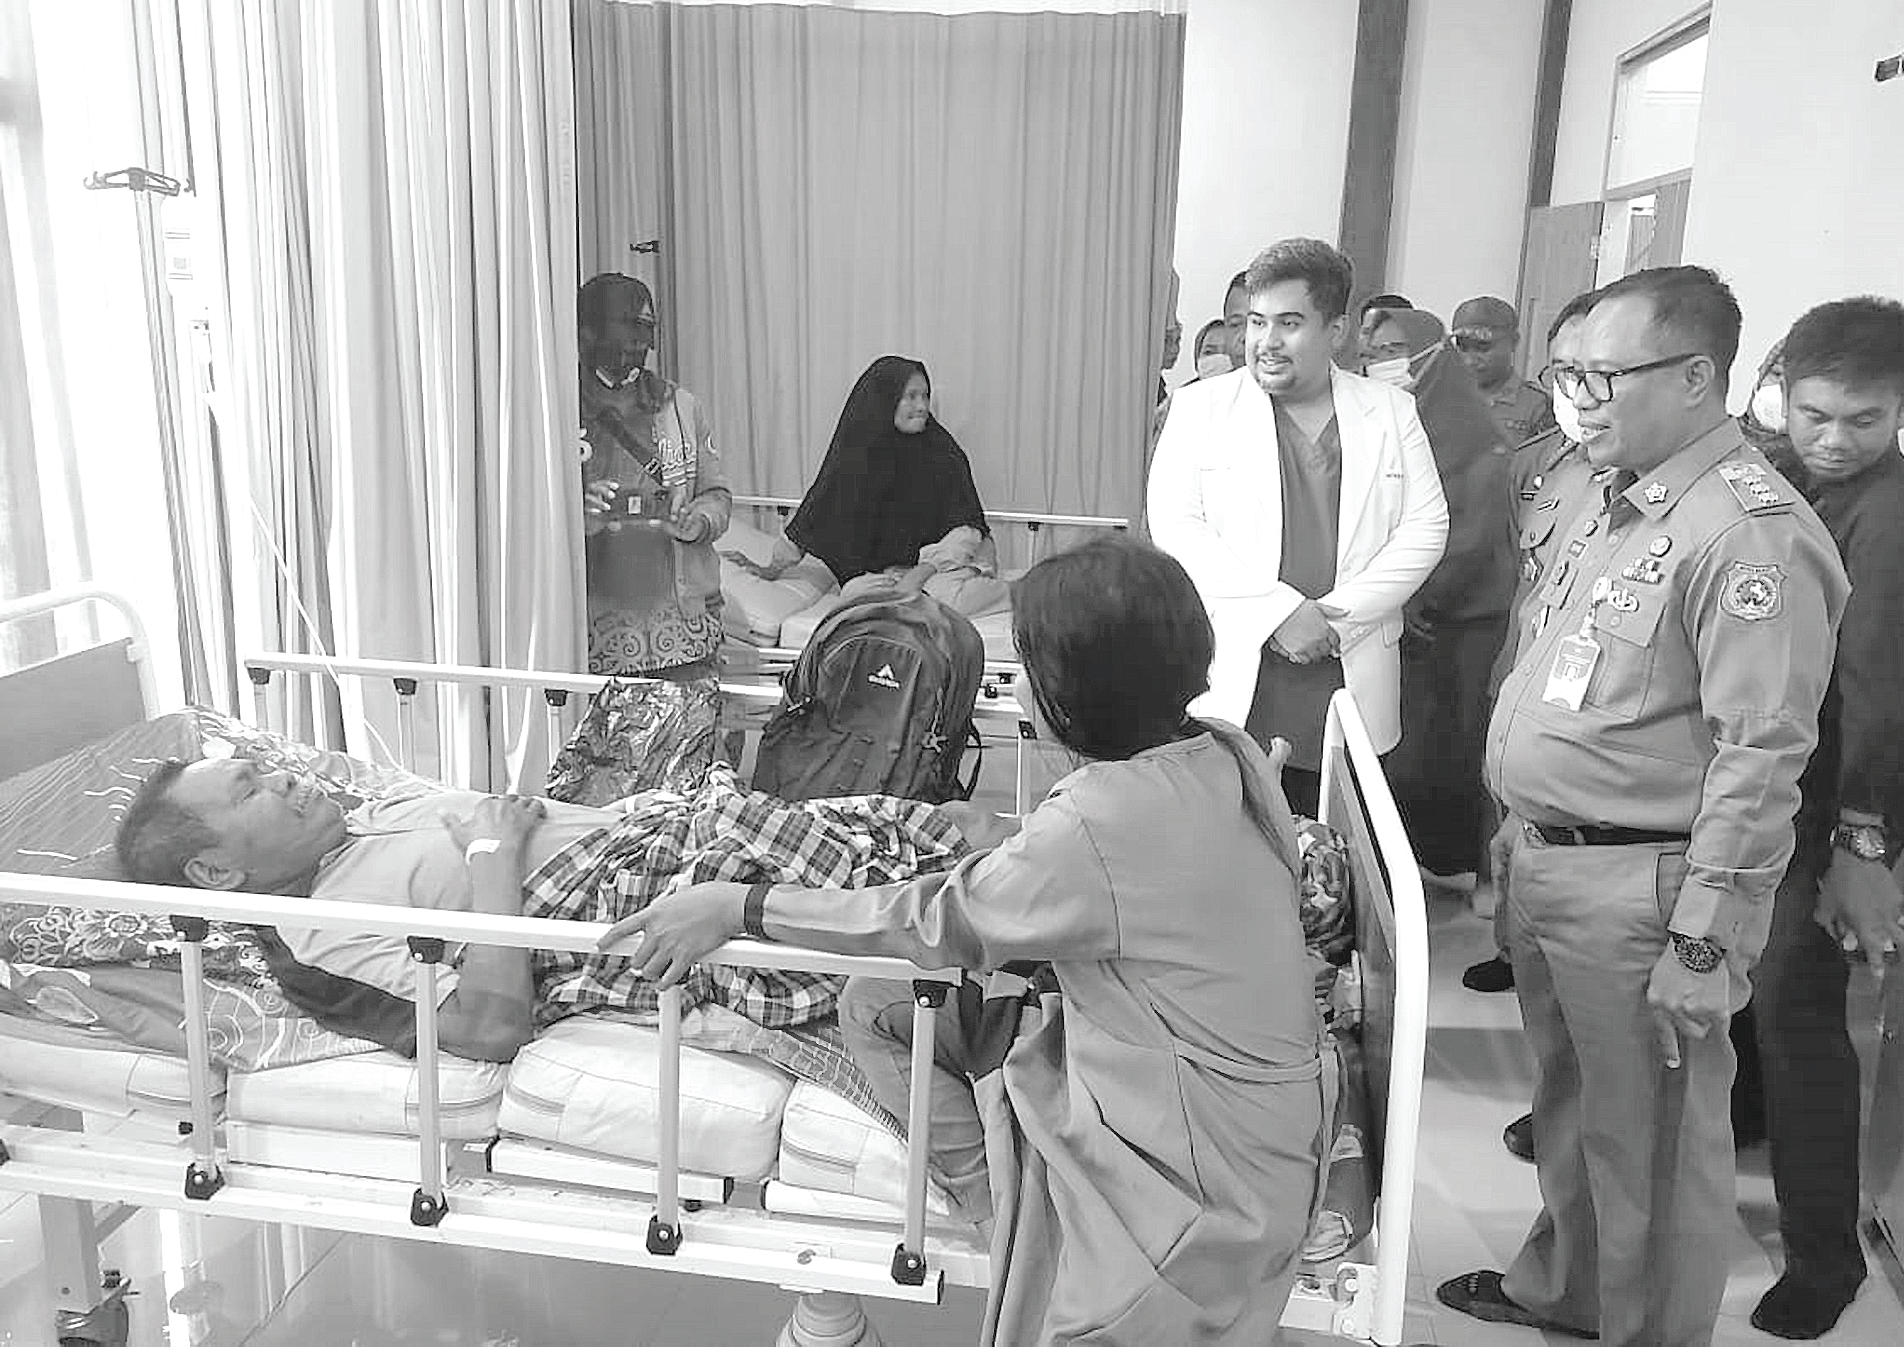 LAYANAN: Pj Bupati Mubar, Bahri (depan) saat mengunjungi salah satu pasien yang di rawat di RSUD Mubar. Kini Pemkab Mubar meningkatkan fasiltas layanan kesehatan dengan membangun Puskesmas Bero. (Akhirman/Kendari Pos)